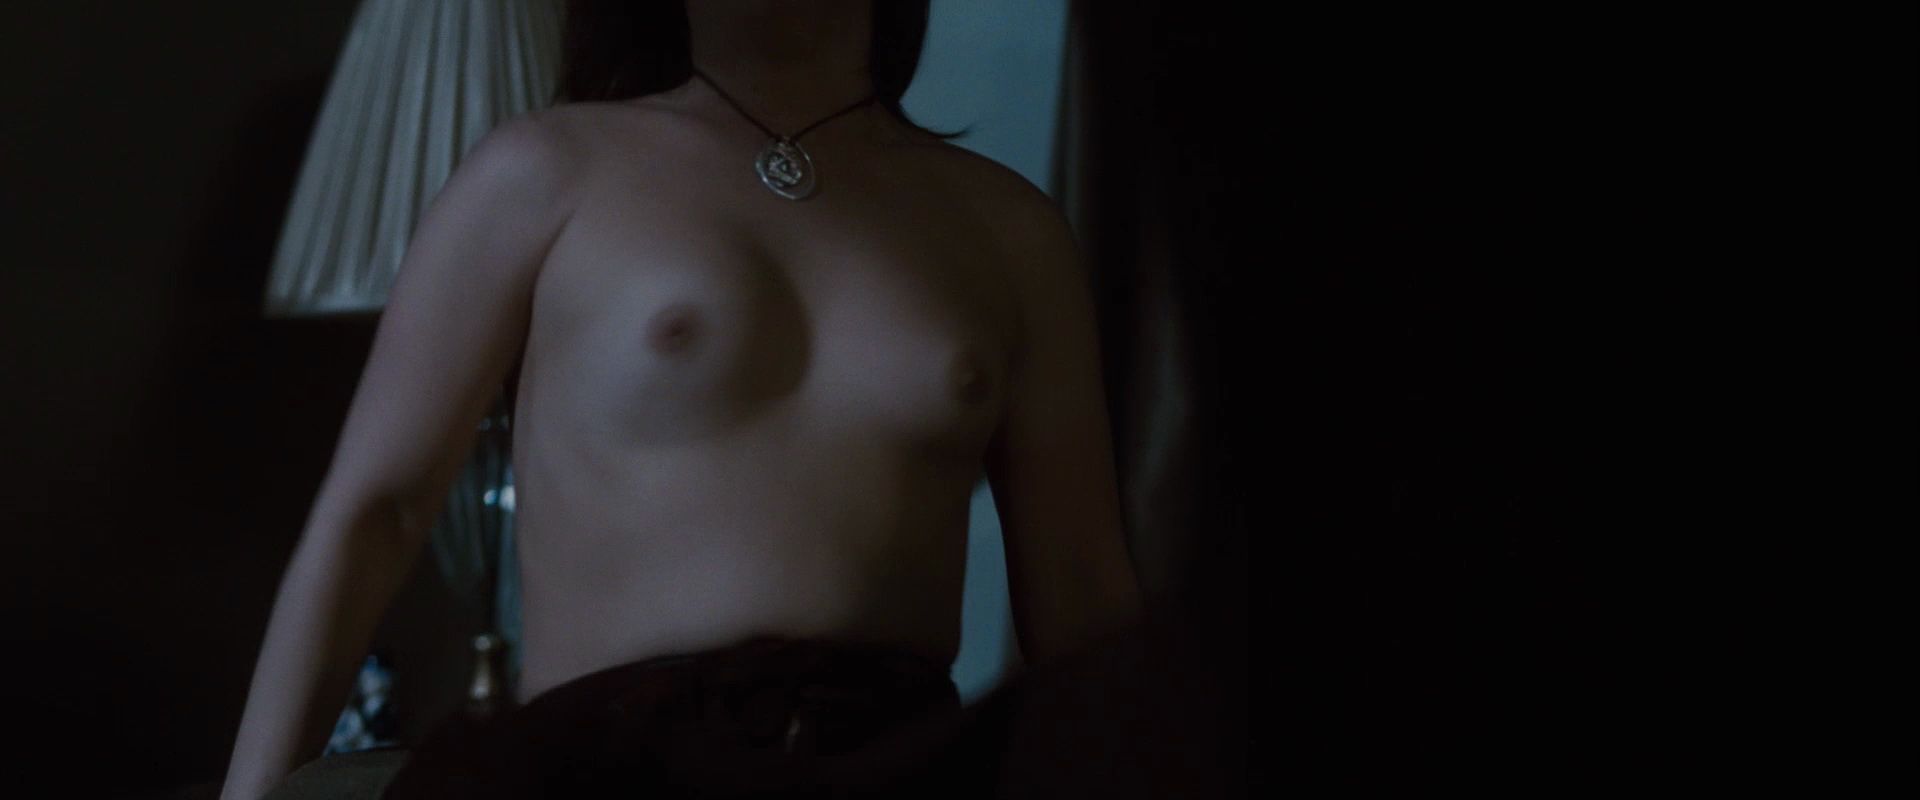 Danielle harris boobs